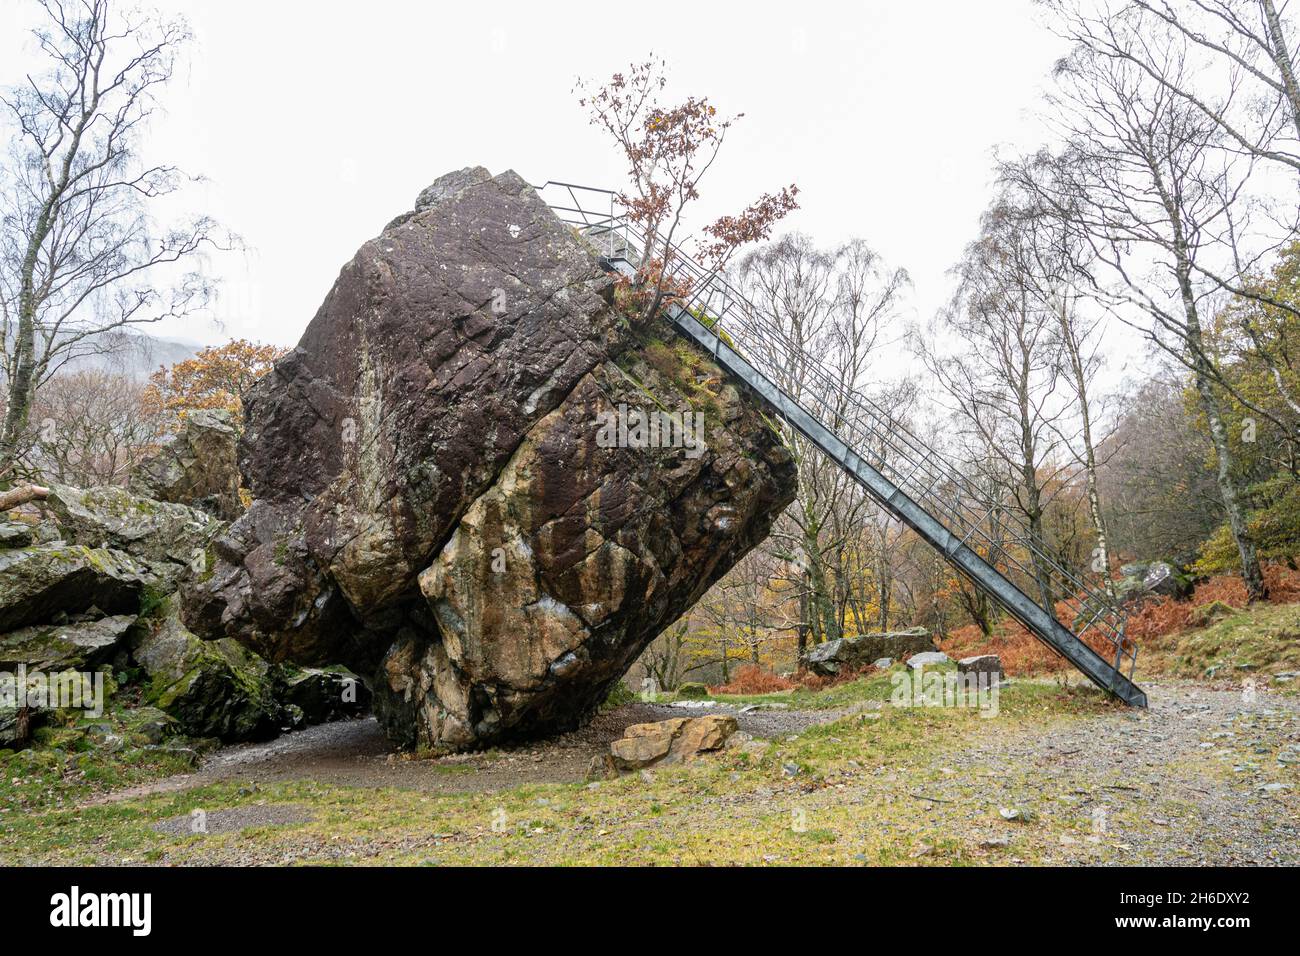 The Bowder Stone, un grand rocher de lave andésite et une attraction touristique à Borrowdale, Cumbria, Angleterre, Royaume-Uni Banque D'Images